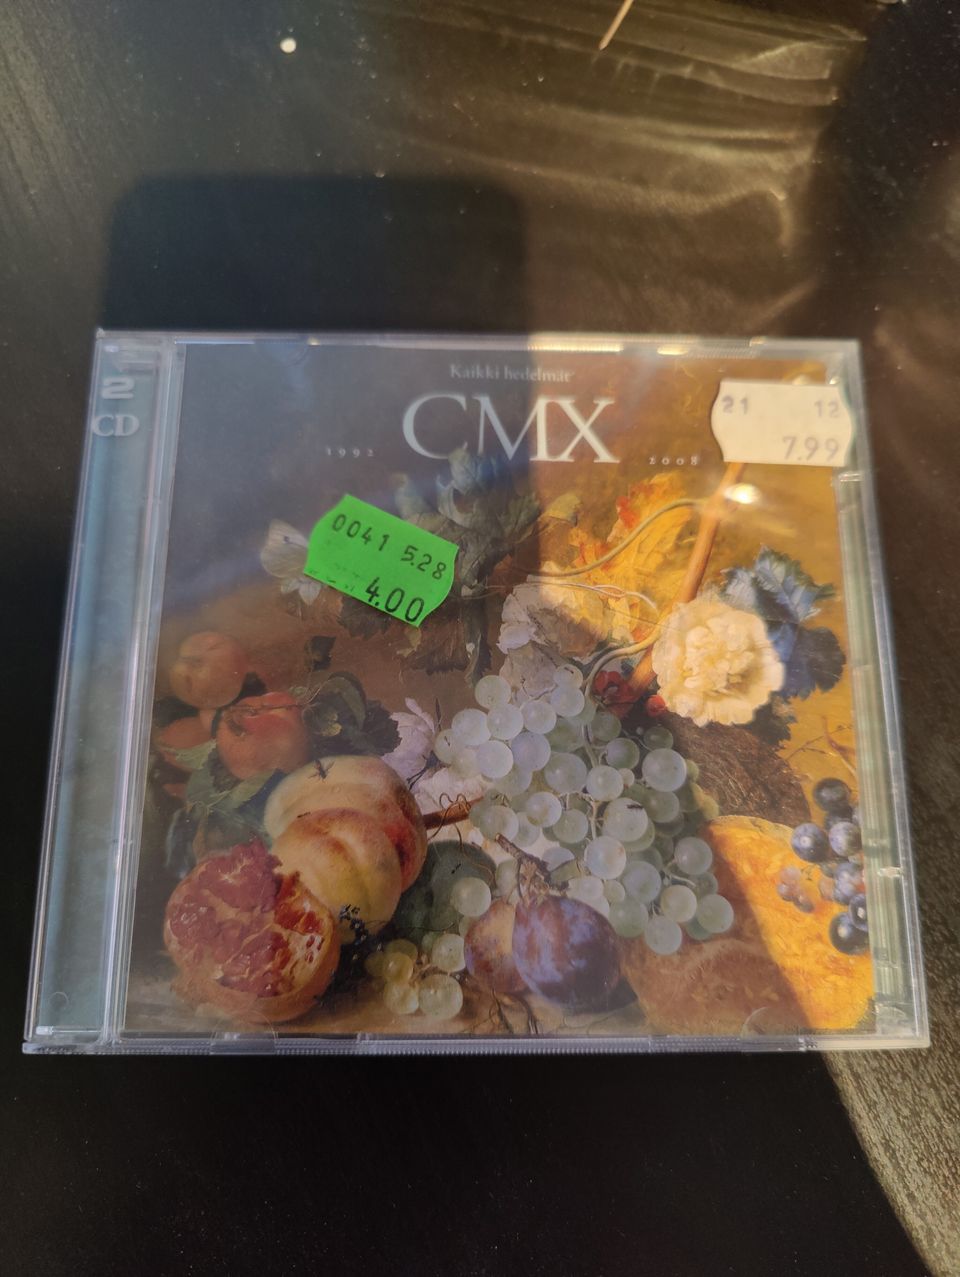 CMX Kaikki Hedelmät 1992/2008 EX/EX-